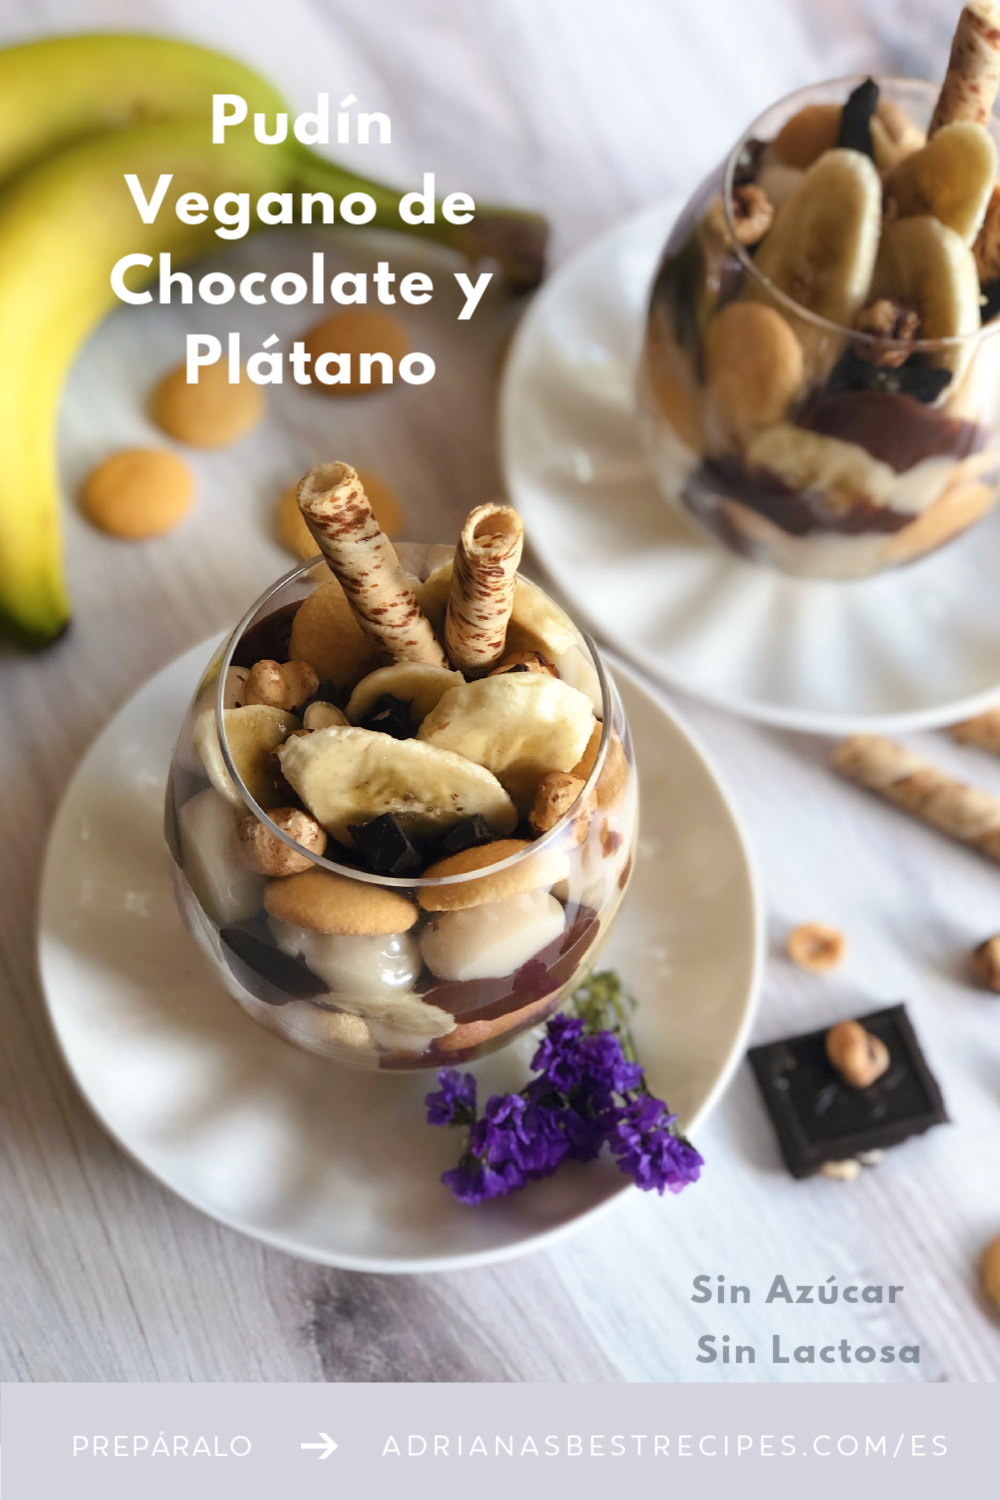 Pudín Vegano de Chocolate y Plátano con galletitas, avellanas tostadas y chocolate negro. Un postres sencillo, sin azúcar y sin lactosa.